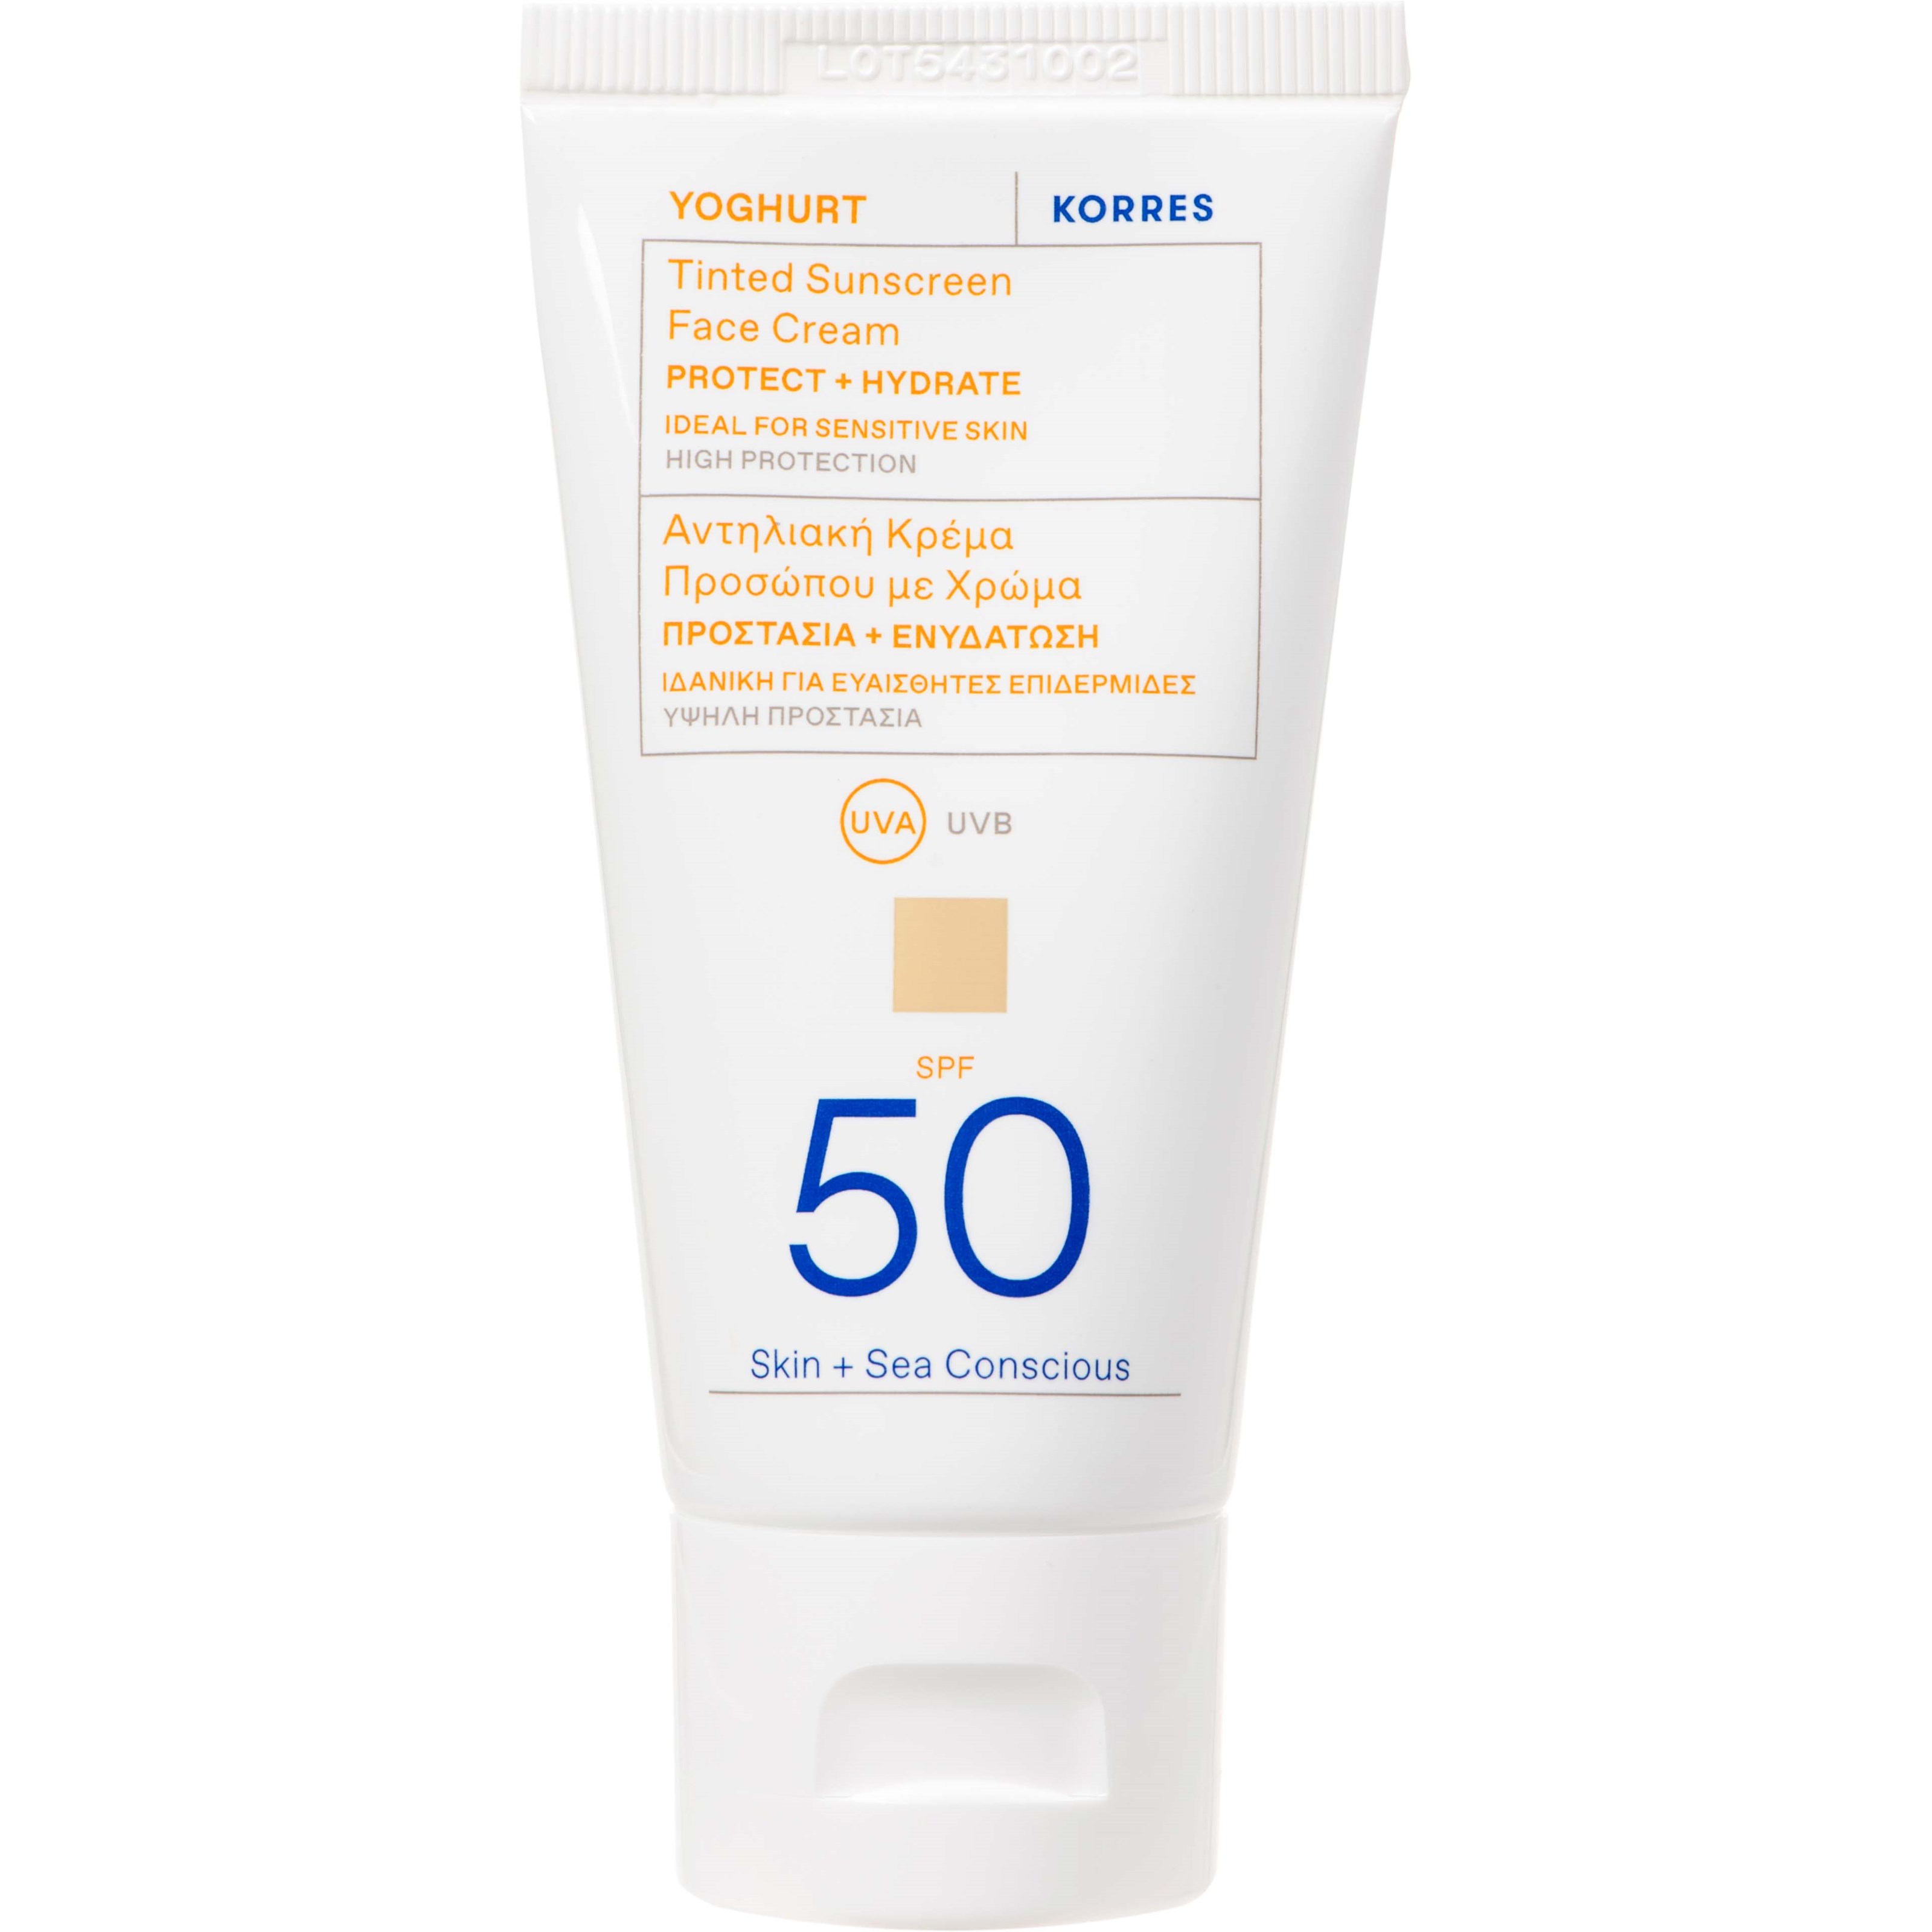 Фото - Крем для засмаги Korres Yoghurt Tinted Sunscreen Face Cream SPF 50 50 ml 